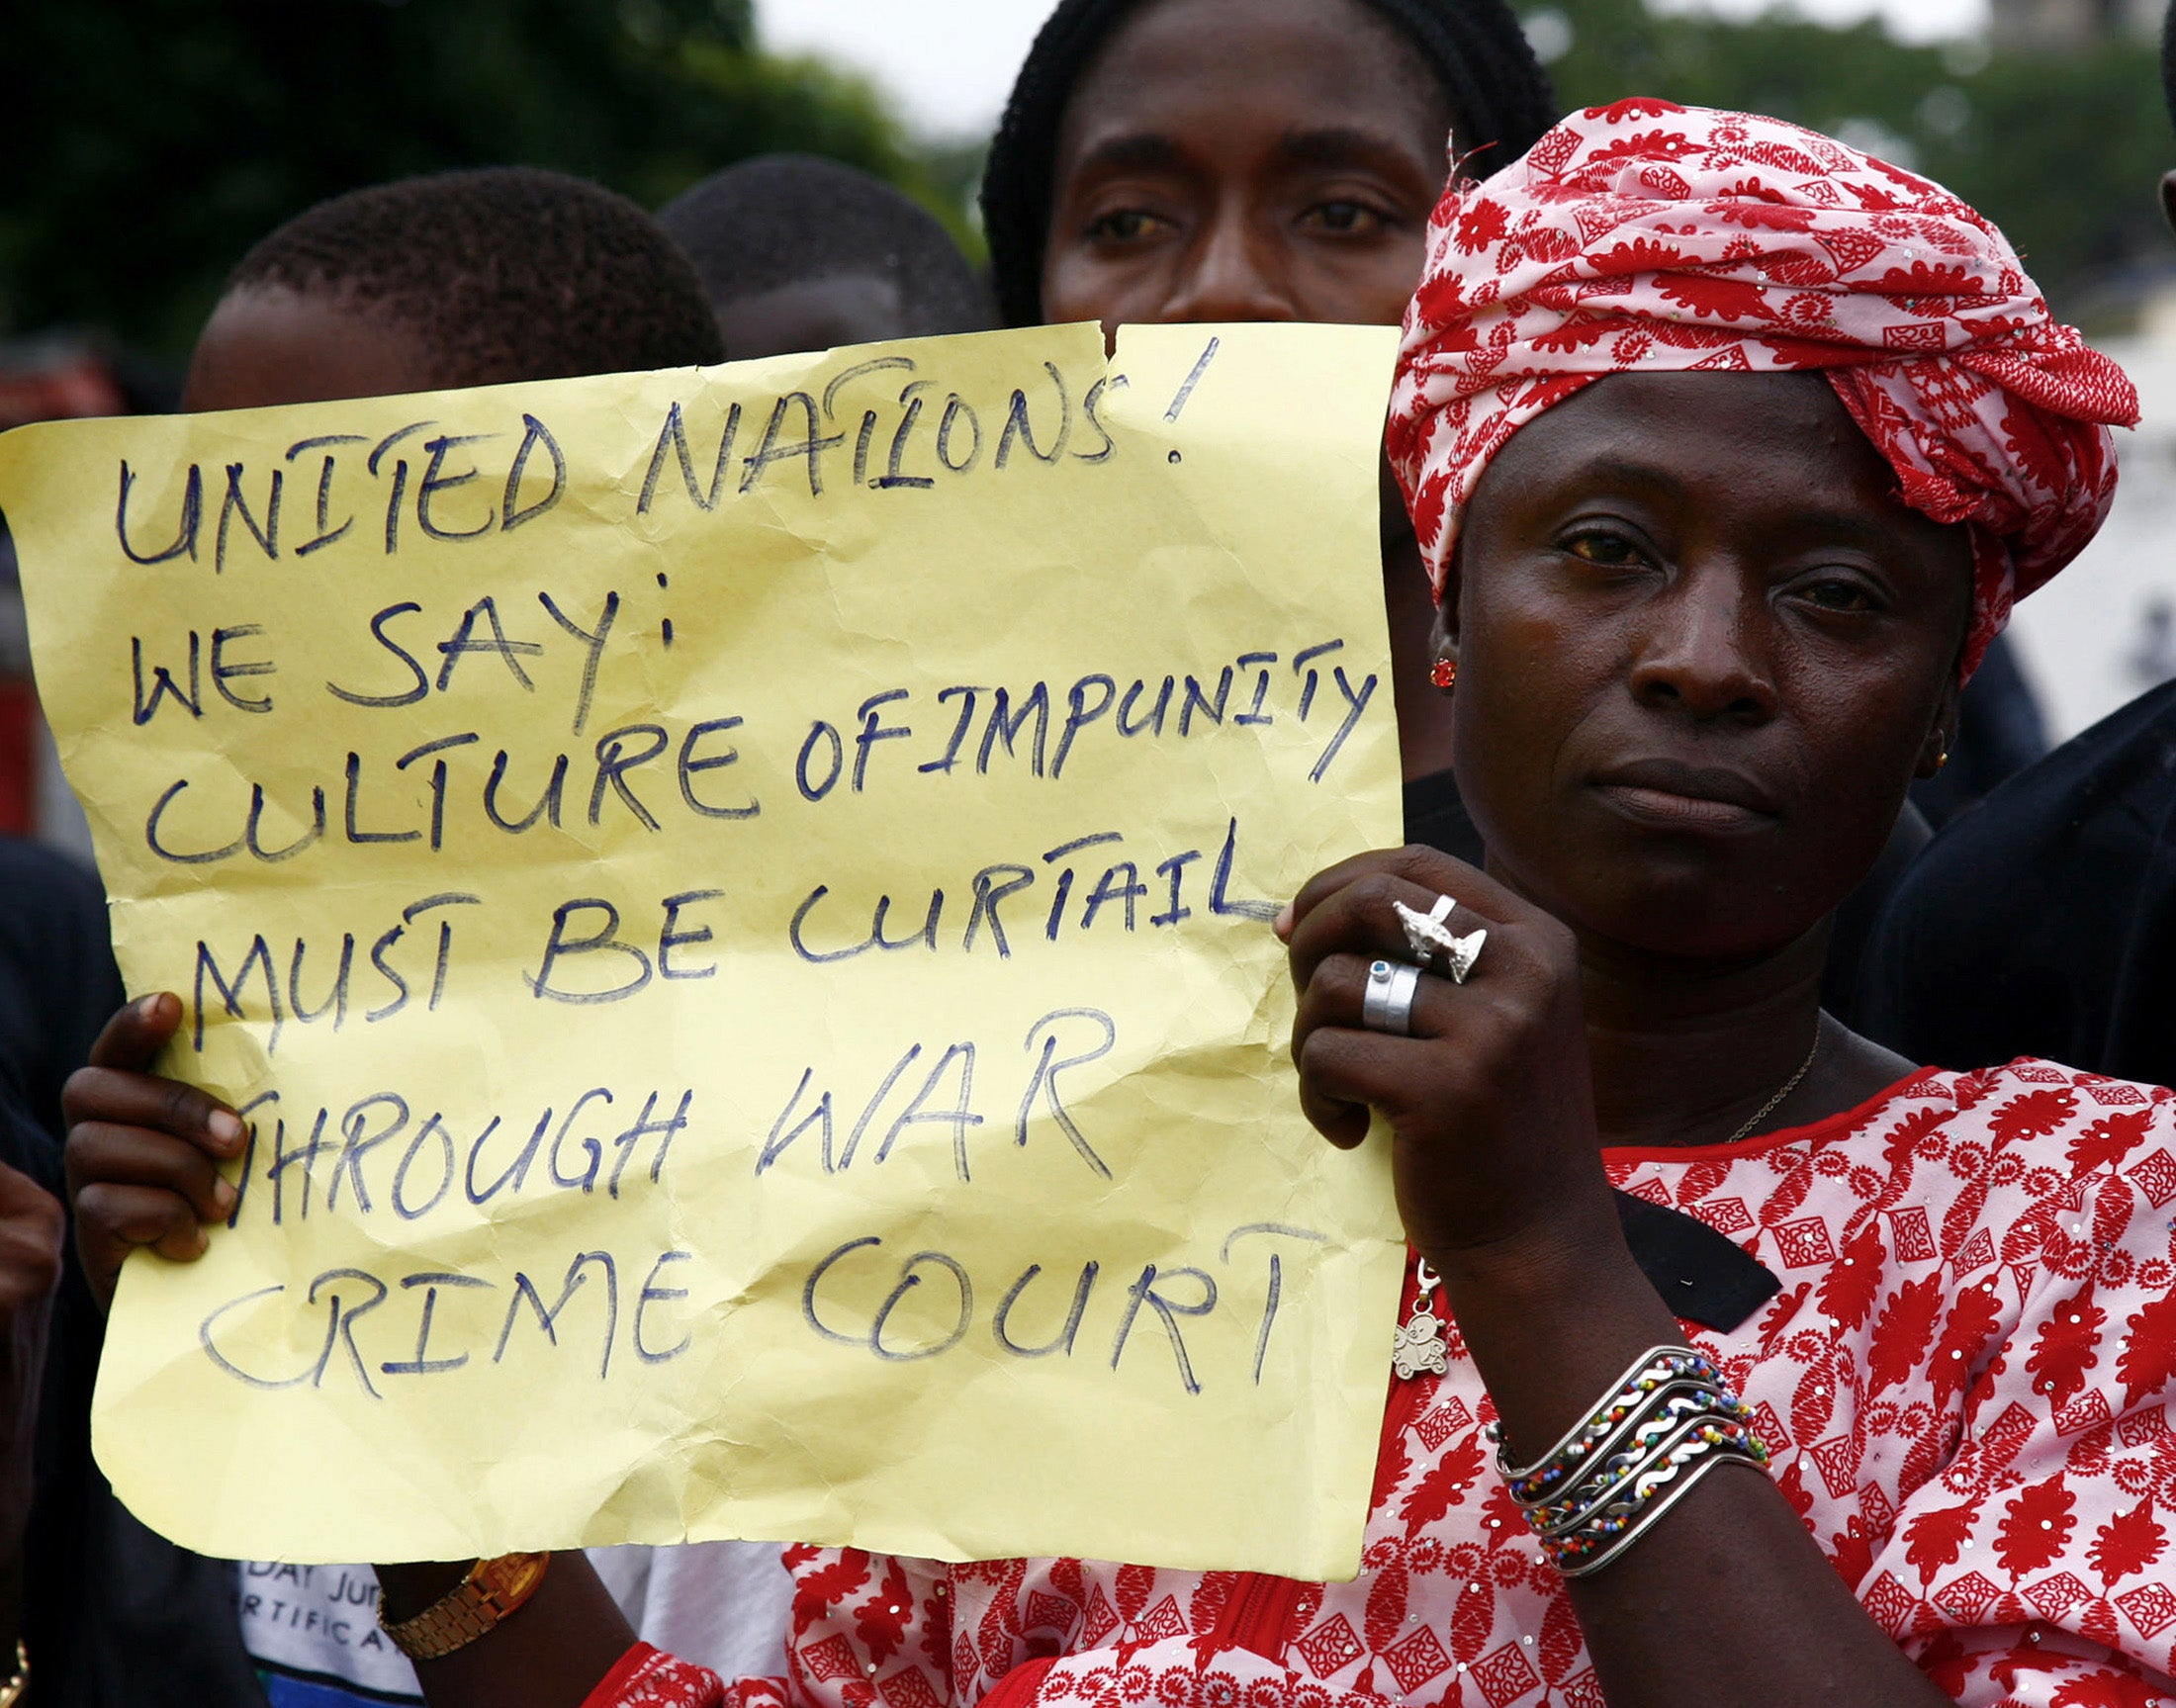 Cette femme tenait une affiche manuscrite appelant à la création d’un Tribunal chargé de juger des crimes de guerre au Liberia (et à la fin de la culture de l’impunité), lors d'une manifestation pacifique dans la capitale Monrovia, à l’occasion da visite du Secrétaire général de l'ONU, Kofi Annan